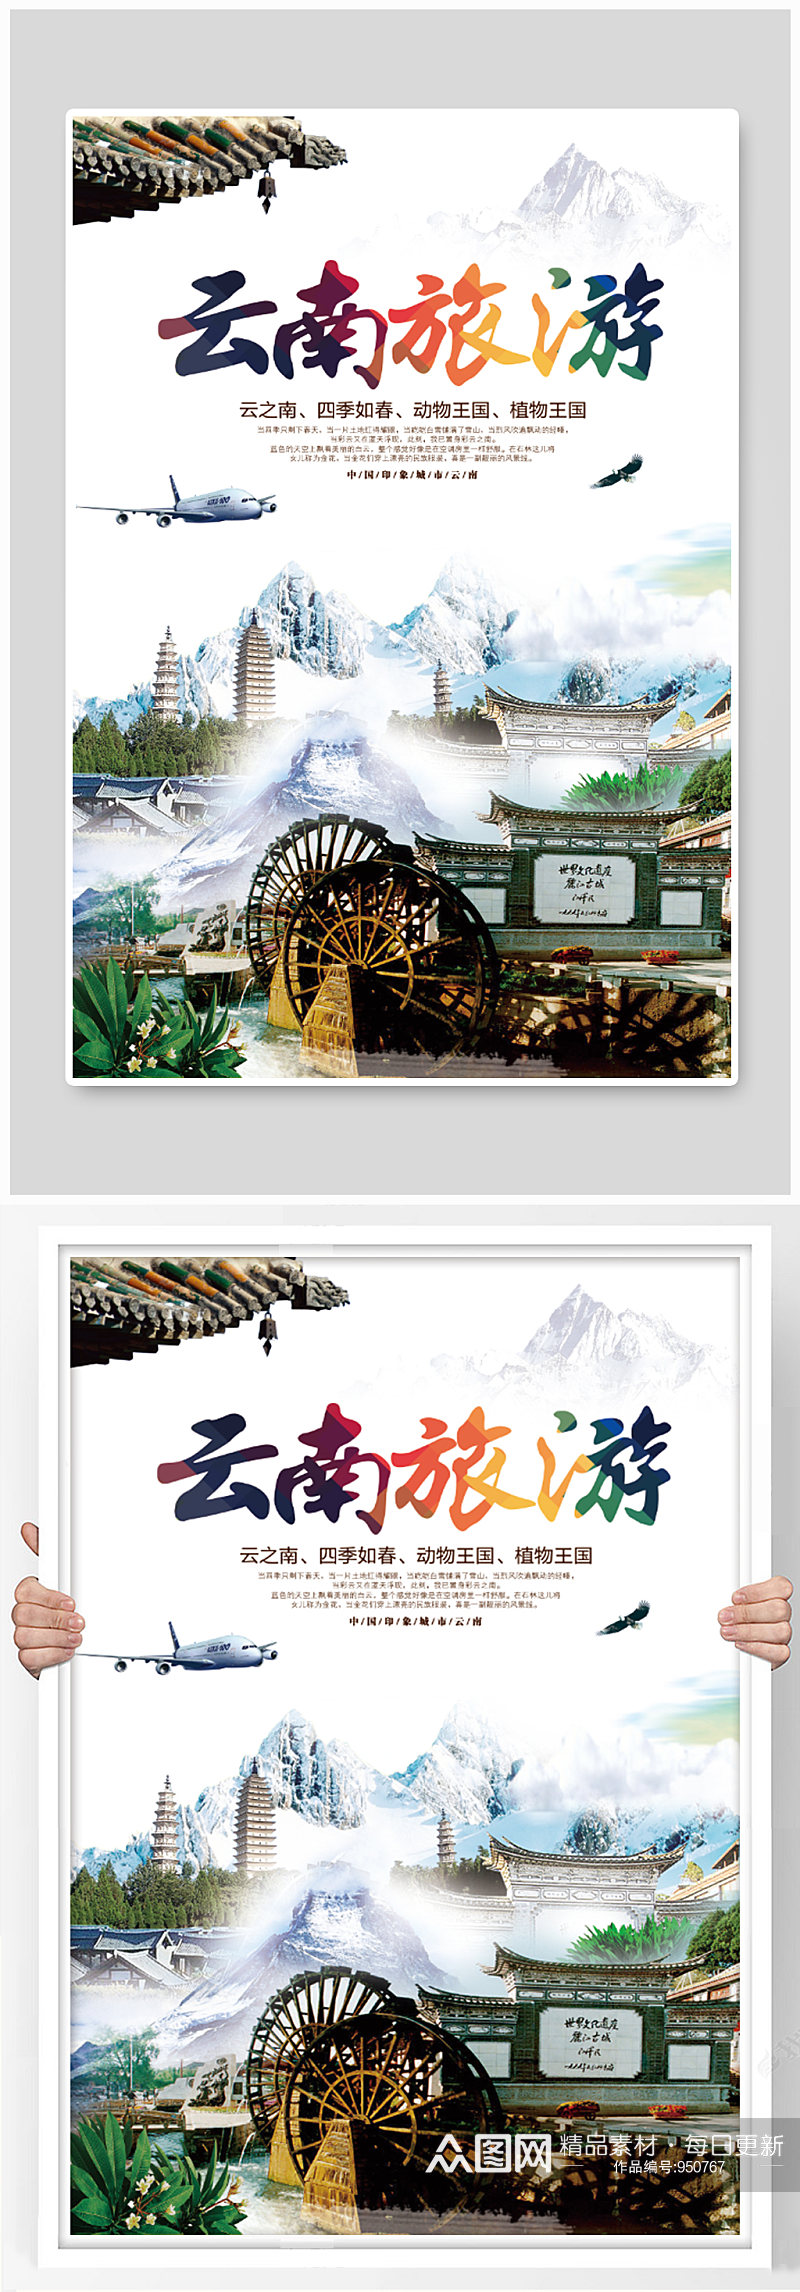 云南旅游宣传海报设计素材